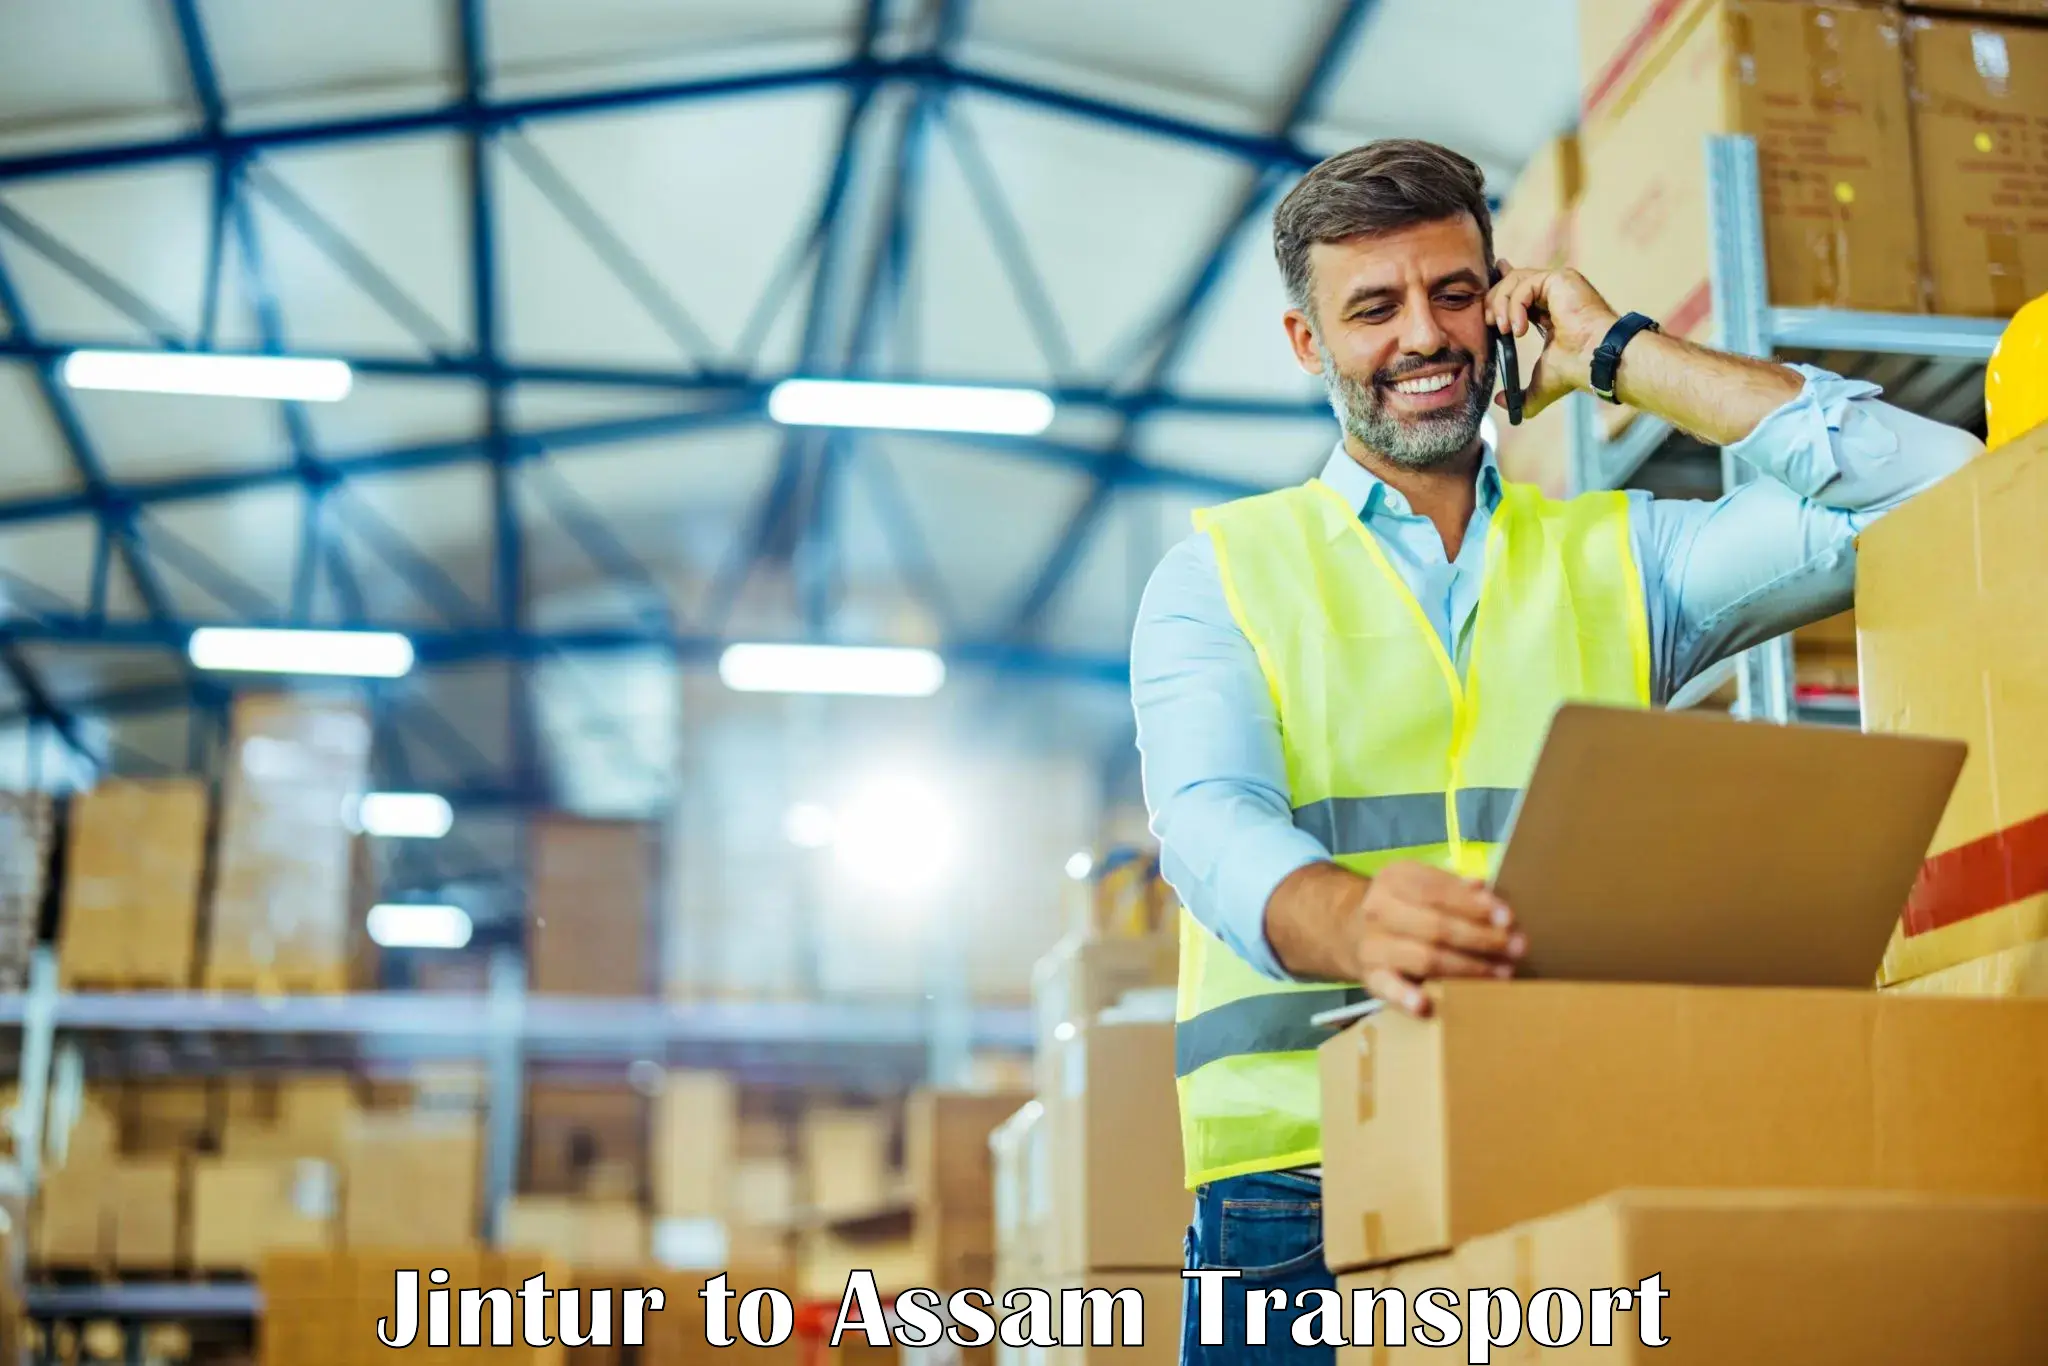 Furniture transport service in Jintur to Assam